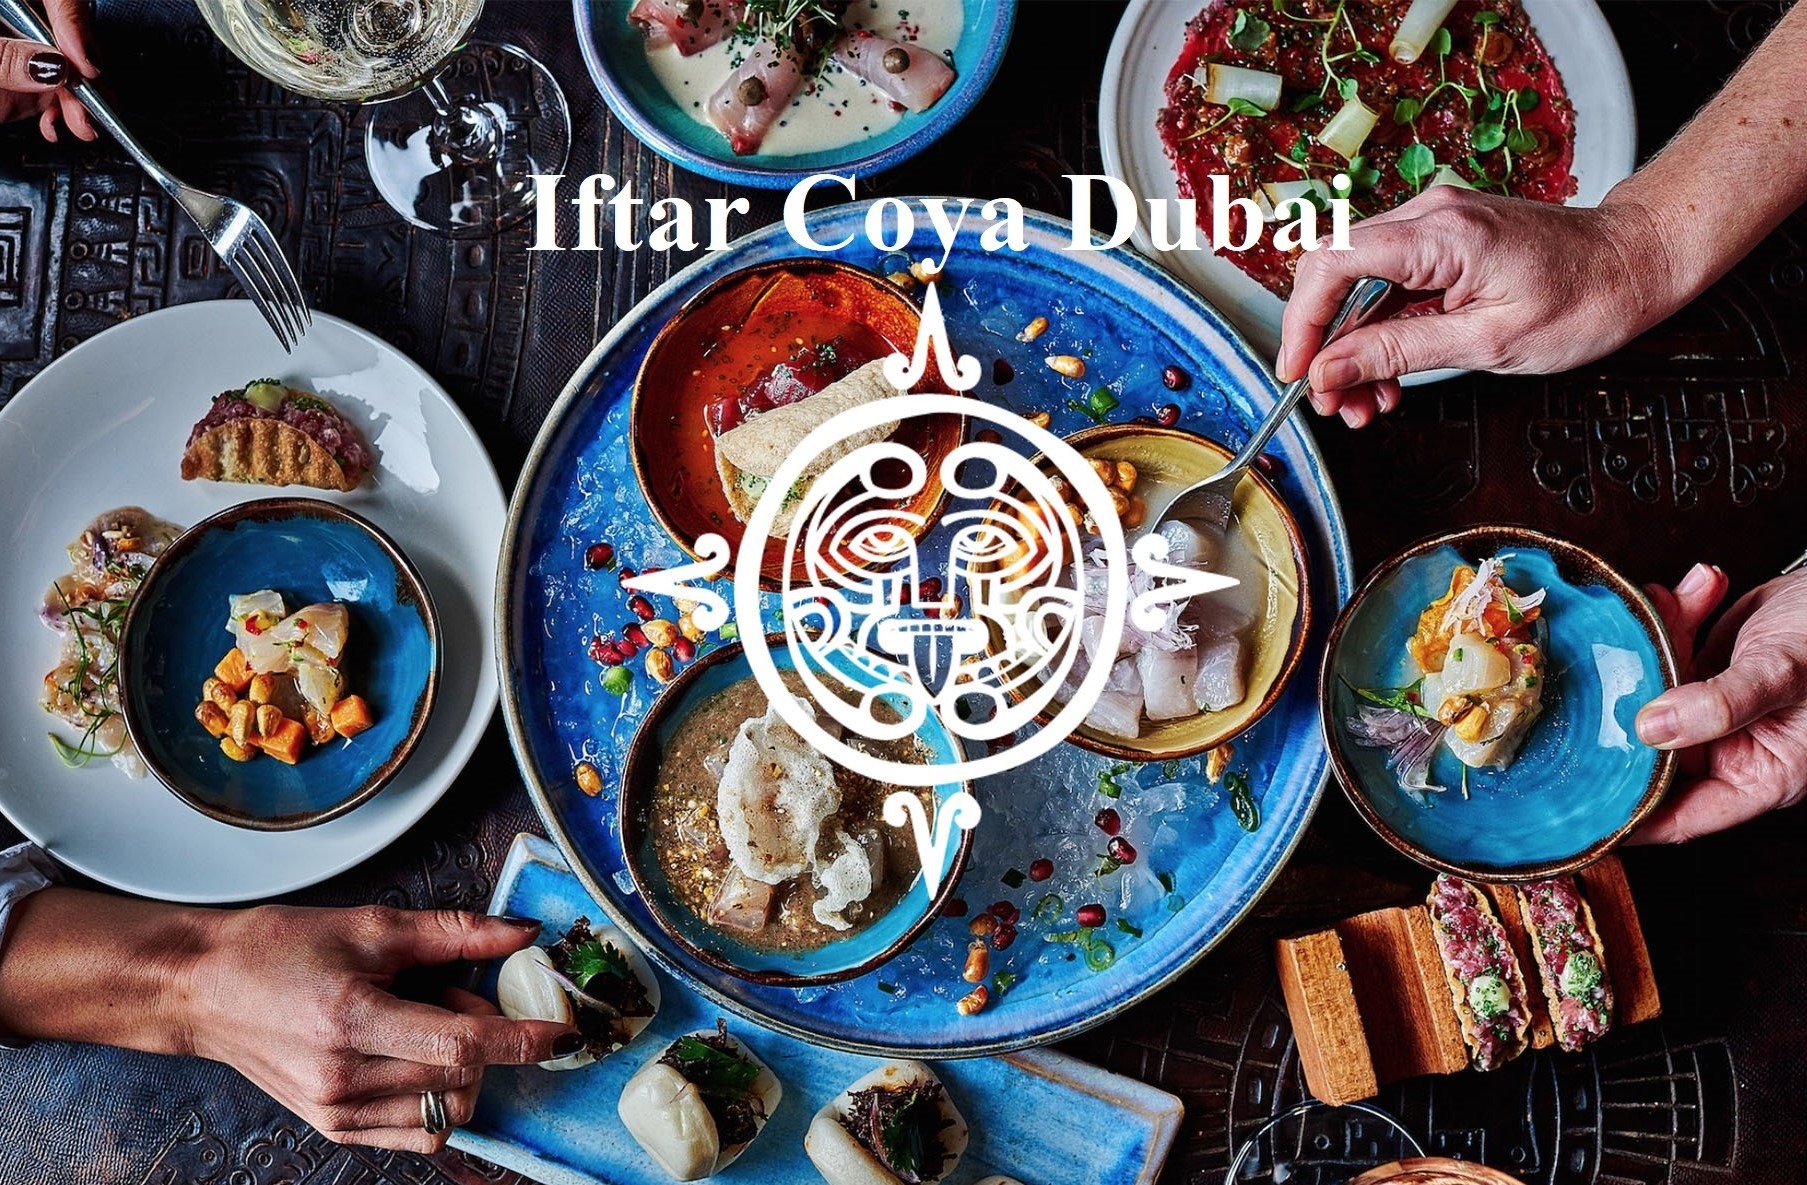 Iftar Coya Dubai - Coming Soon in UAE